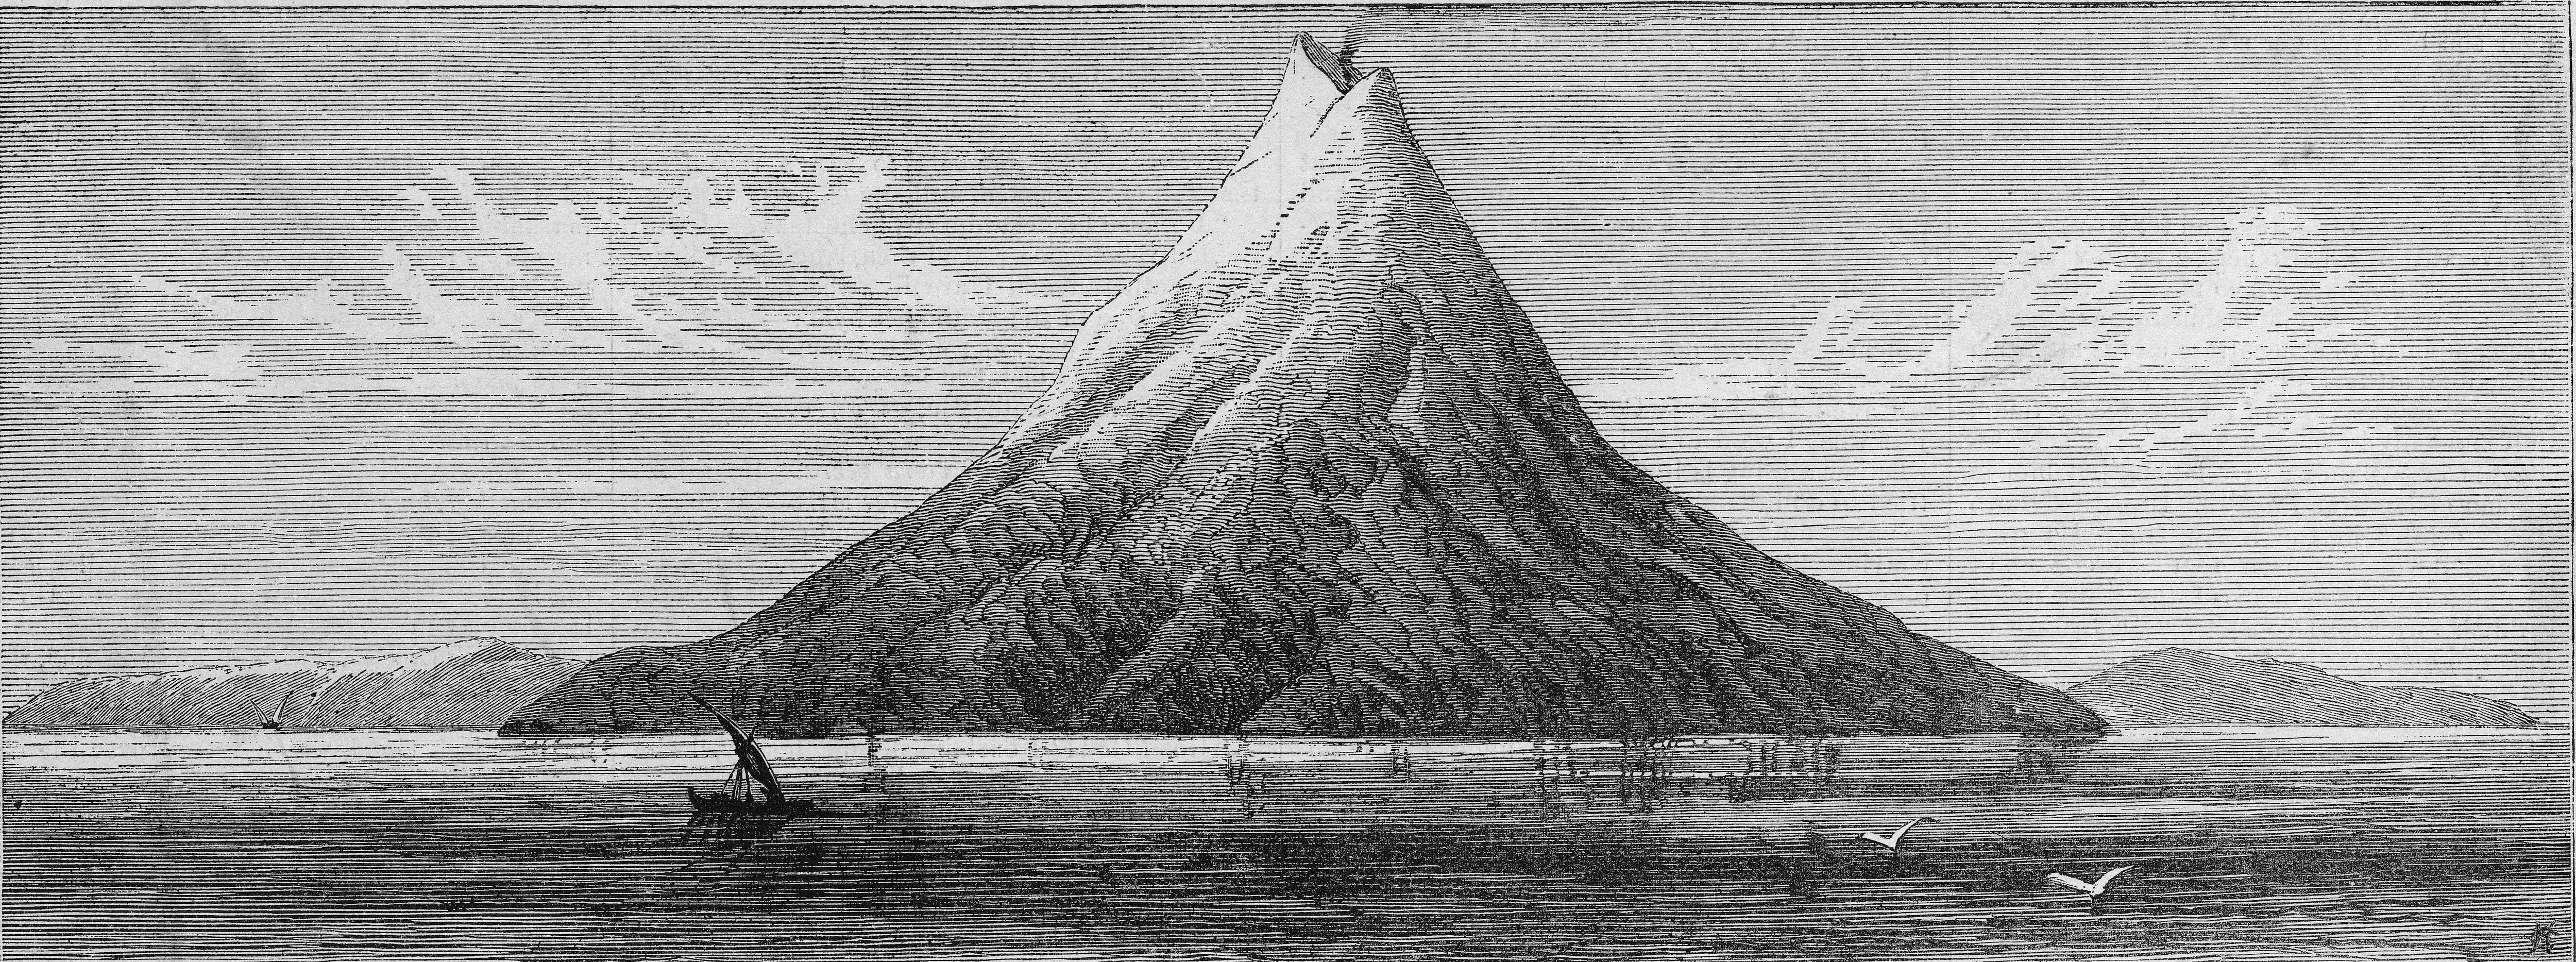 La erupción del Krakatoa en 1883 produjo alrededor de 40.000 víctimas (Photo by Kean Collection/Getty Images)